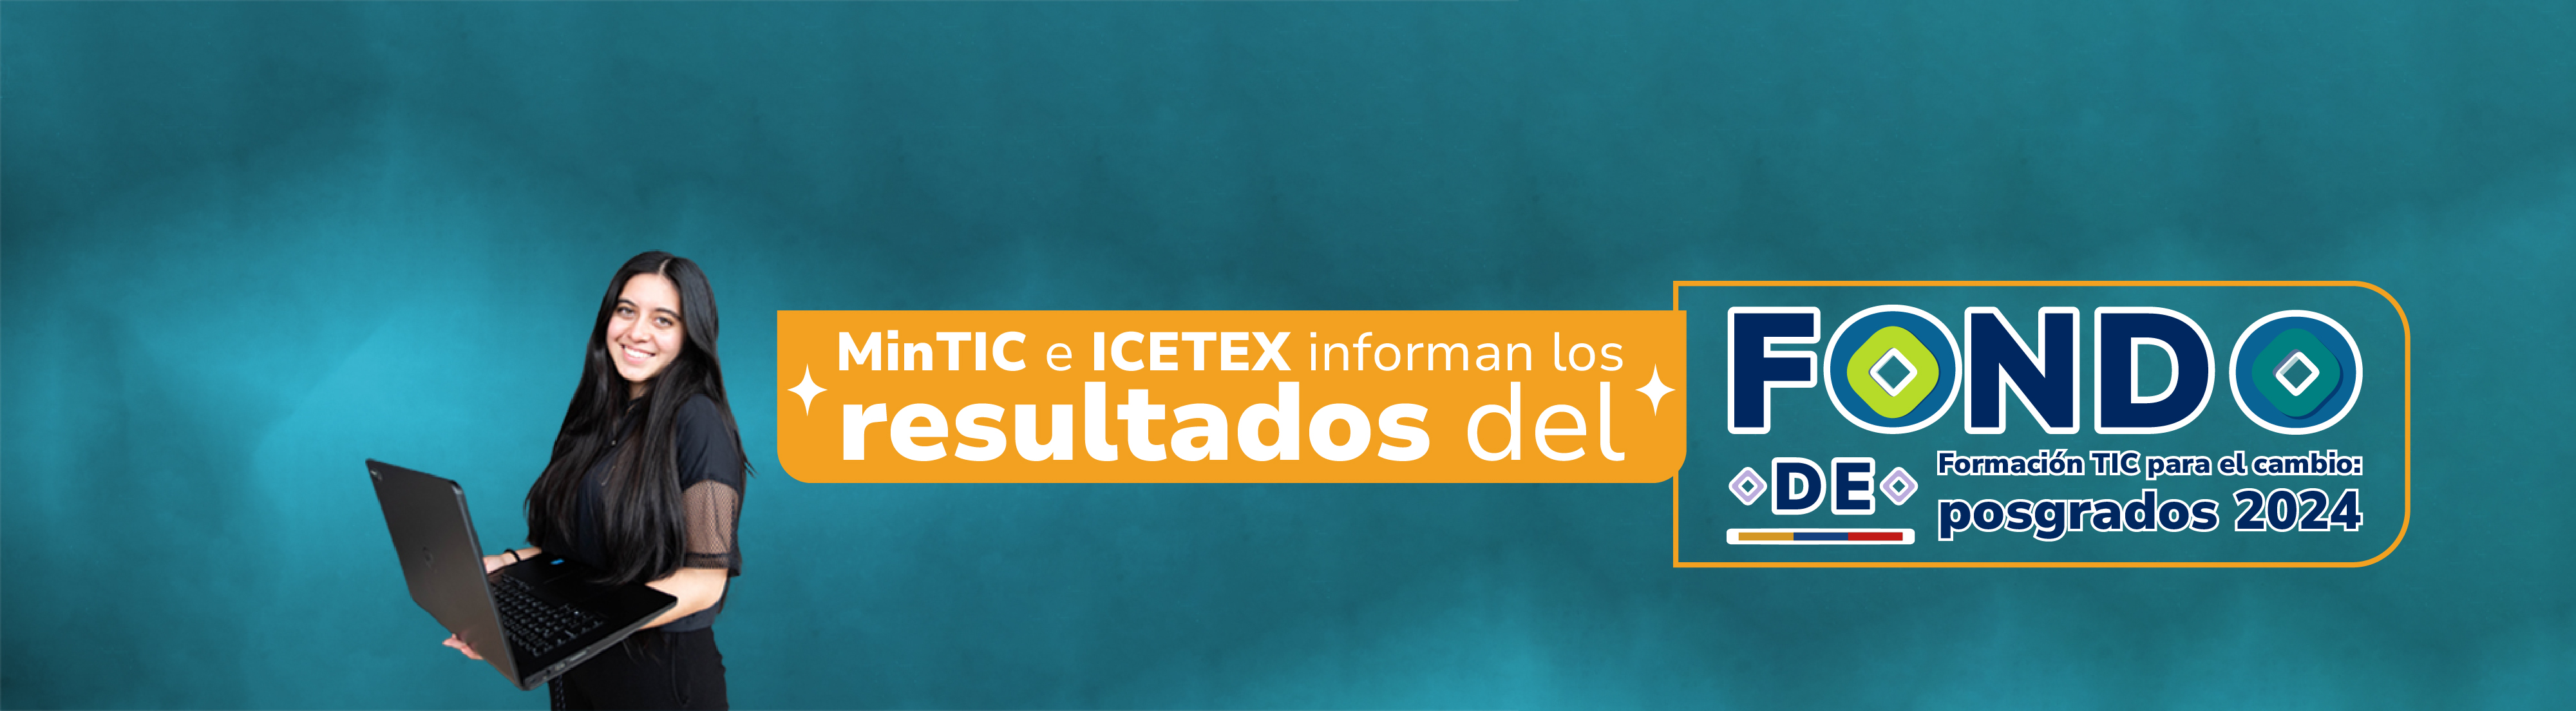 banner MinTIC e ICETEX informa los resultados del fondo de formación TIC para el cambio